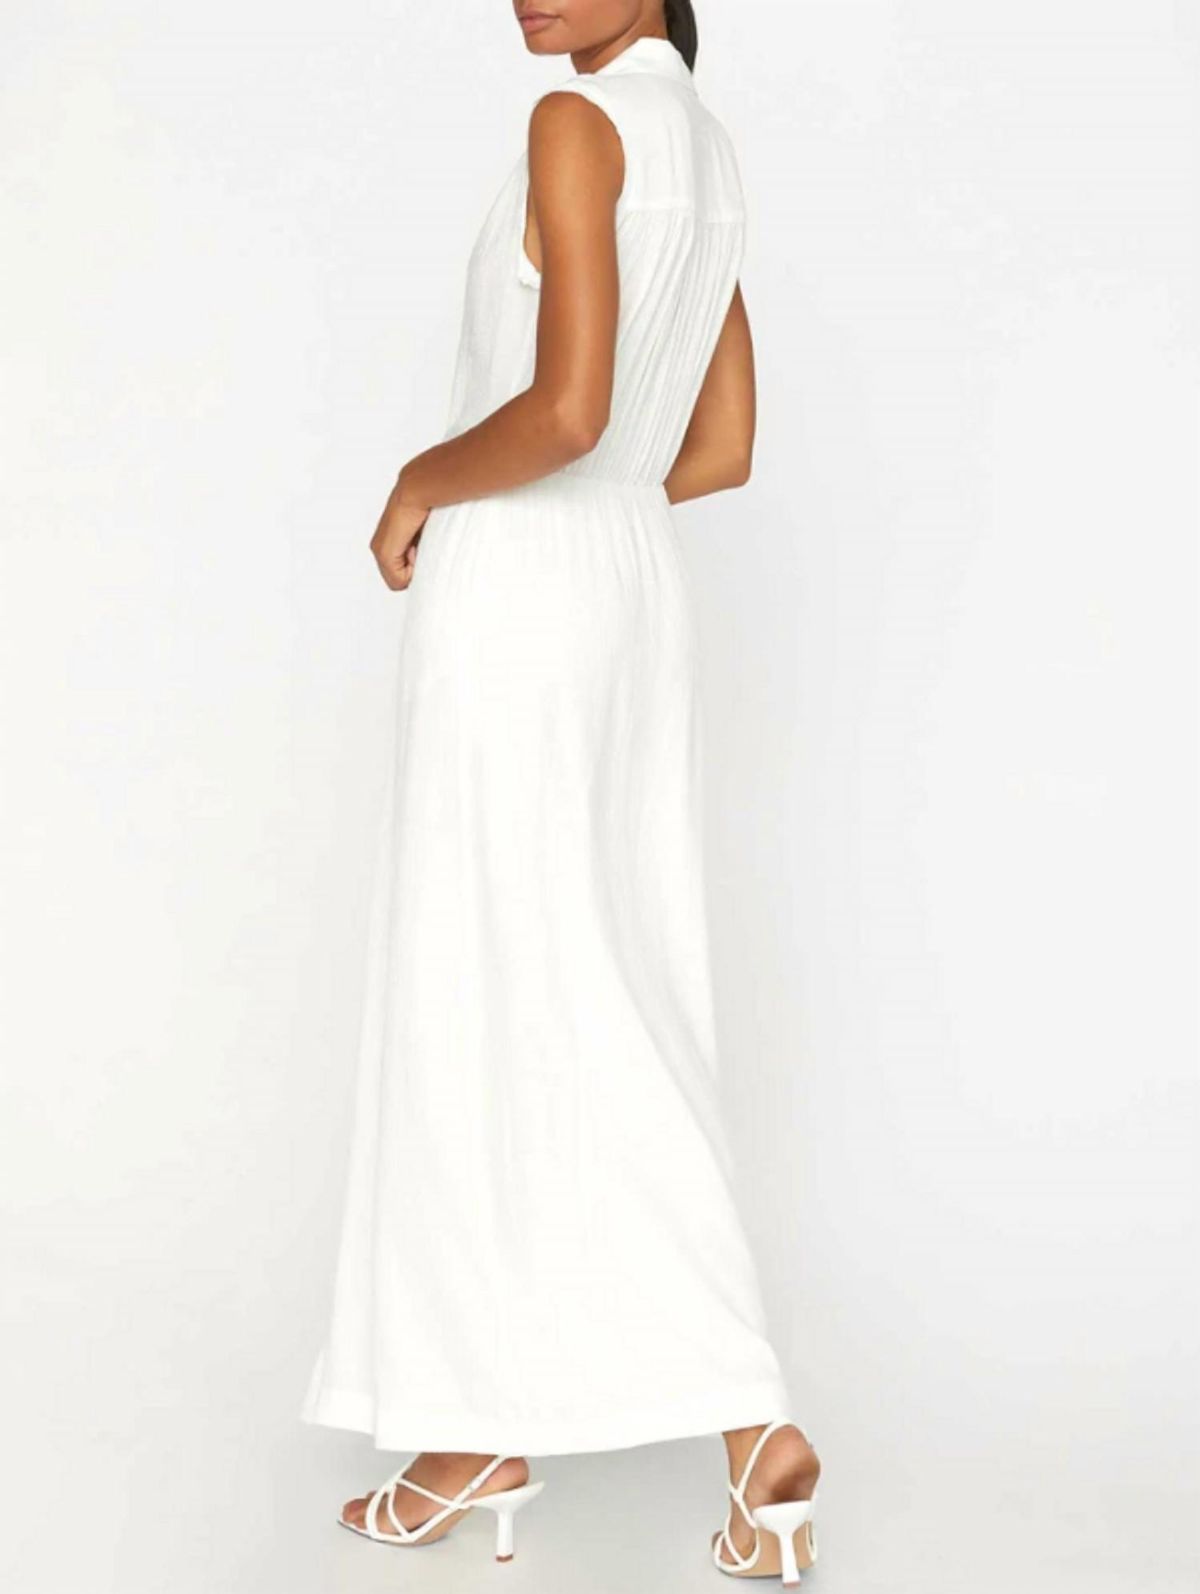 Style 1-3672989817-3855 Brochu Walker Size XS White Side Slit Dress on Queenly